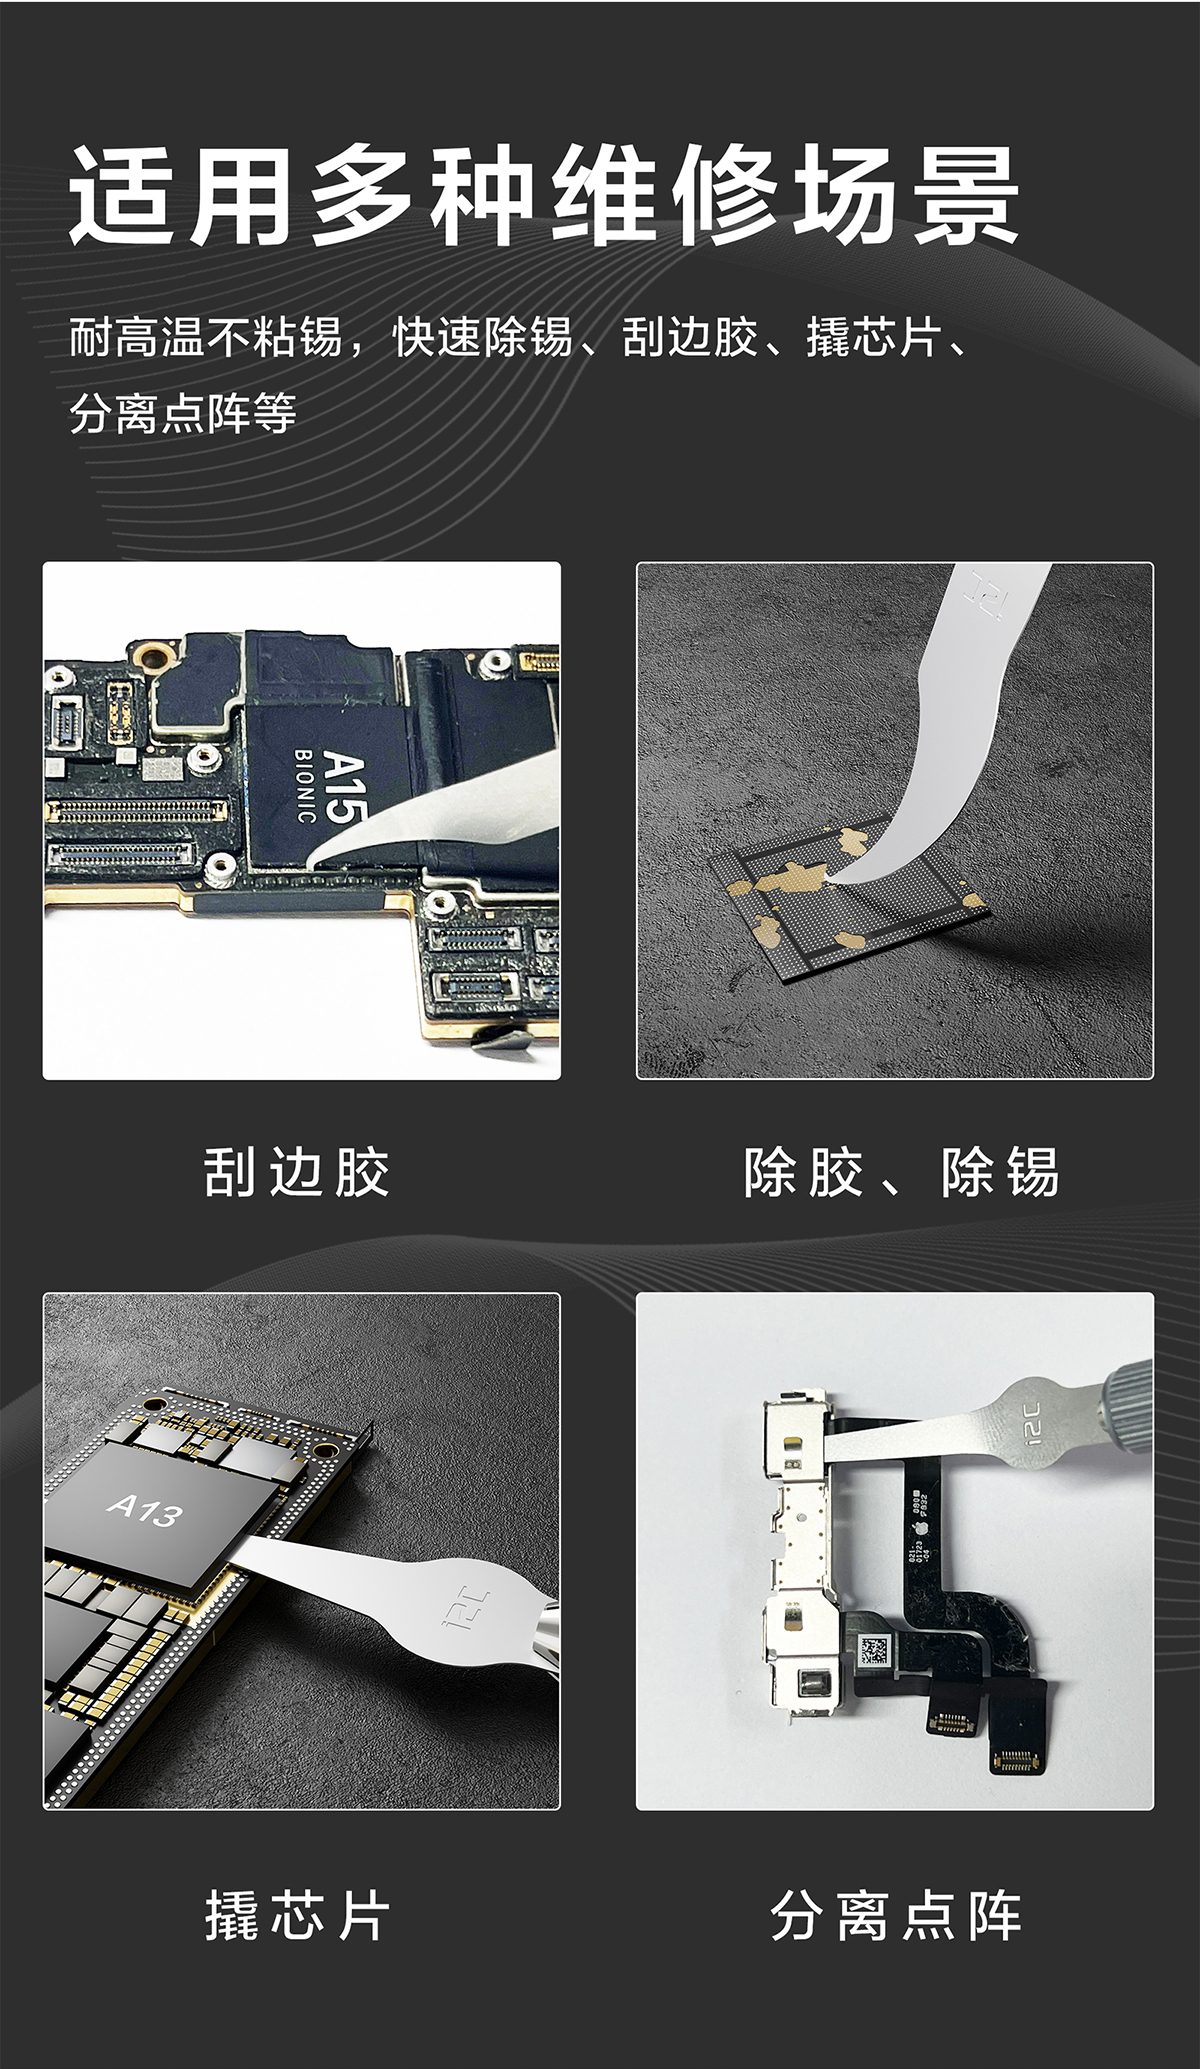 i2C Q5芯片维修刀片/轻握200维修刀柄  去边胶/除胶、拆芯片、撬CPU(图3)